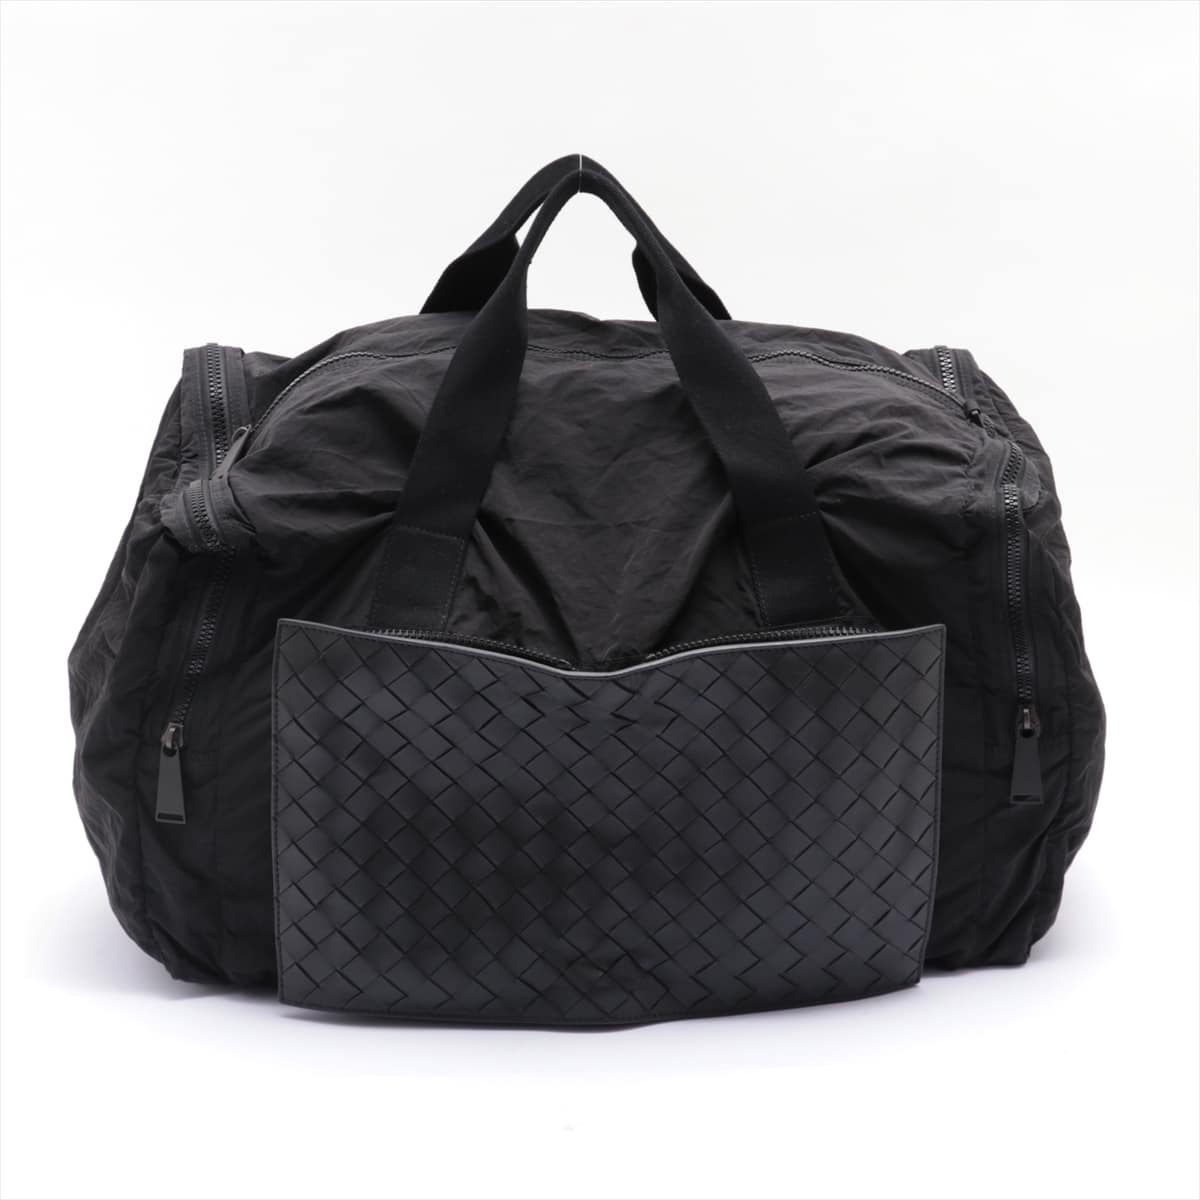 Bottega Veneta Intrecciato Nylon & Leather 2way handbag Black